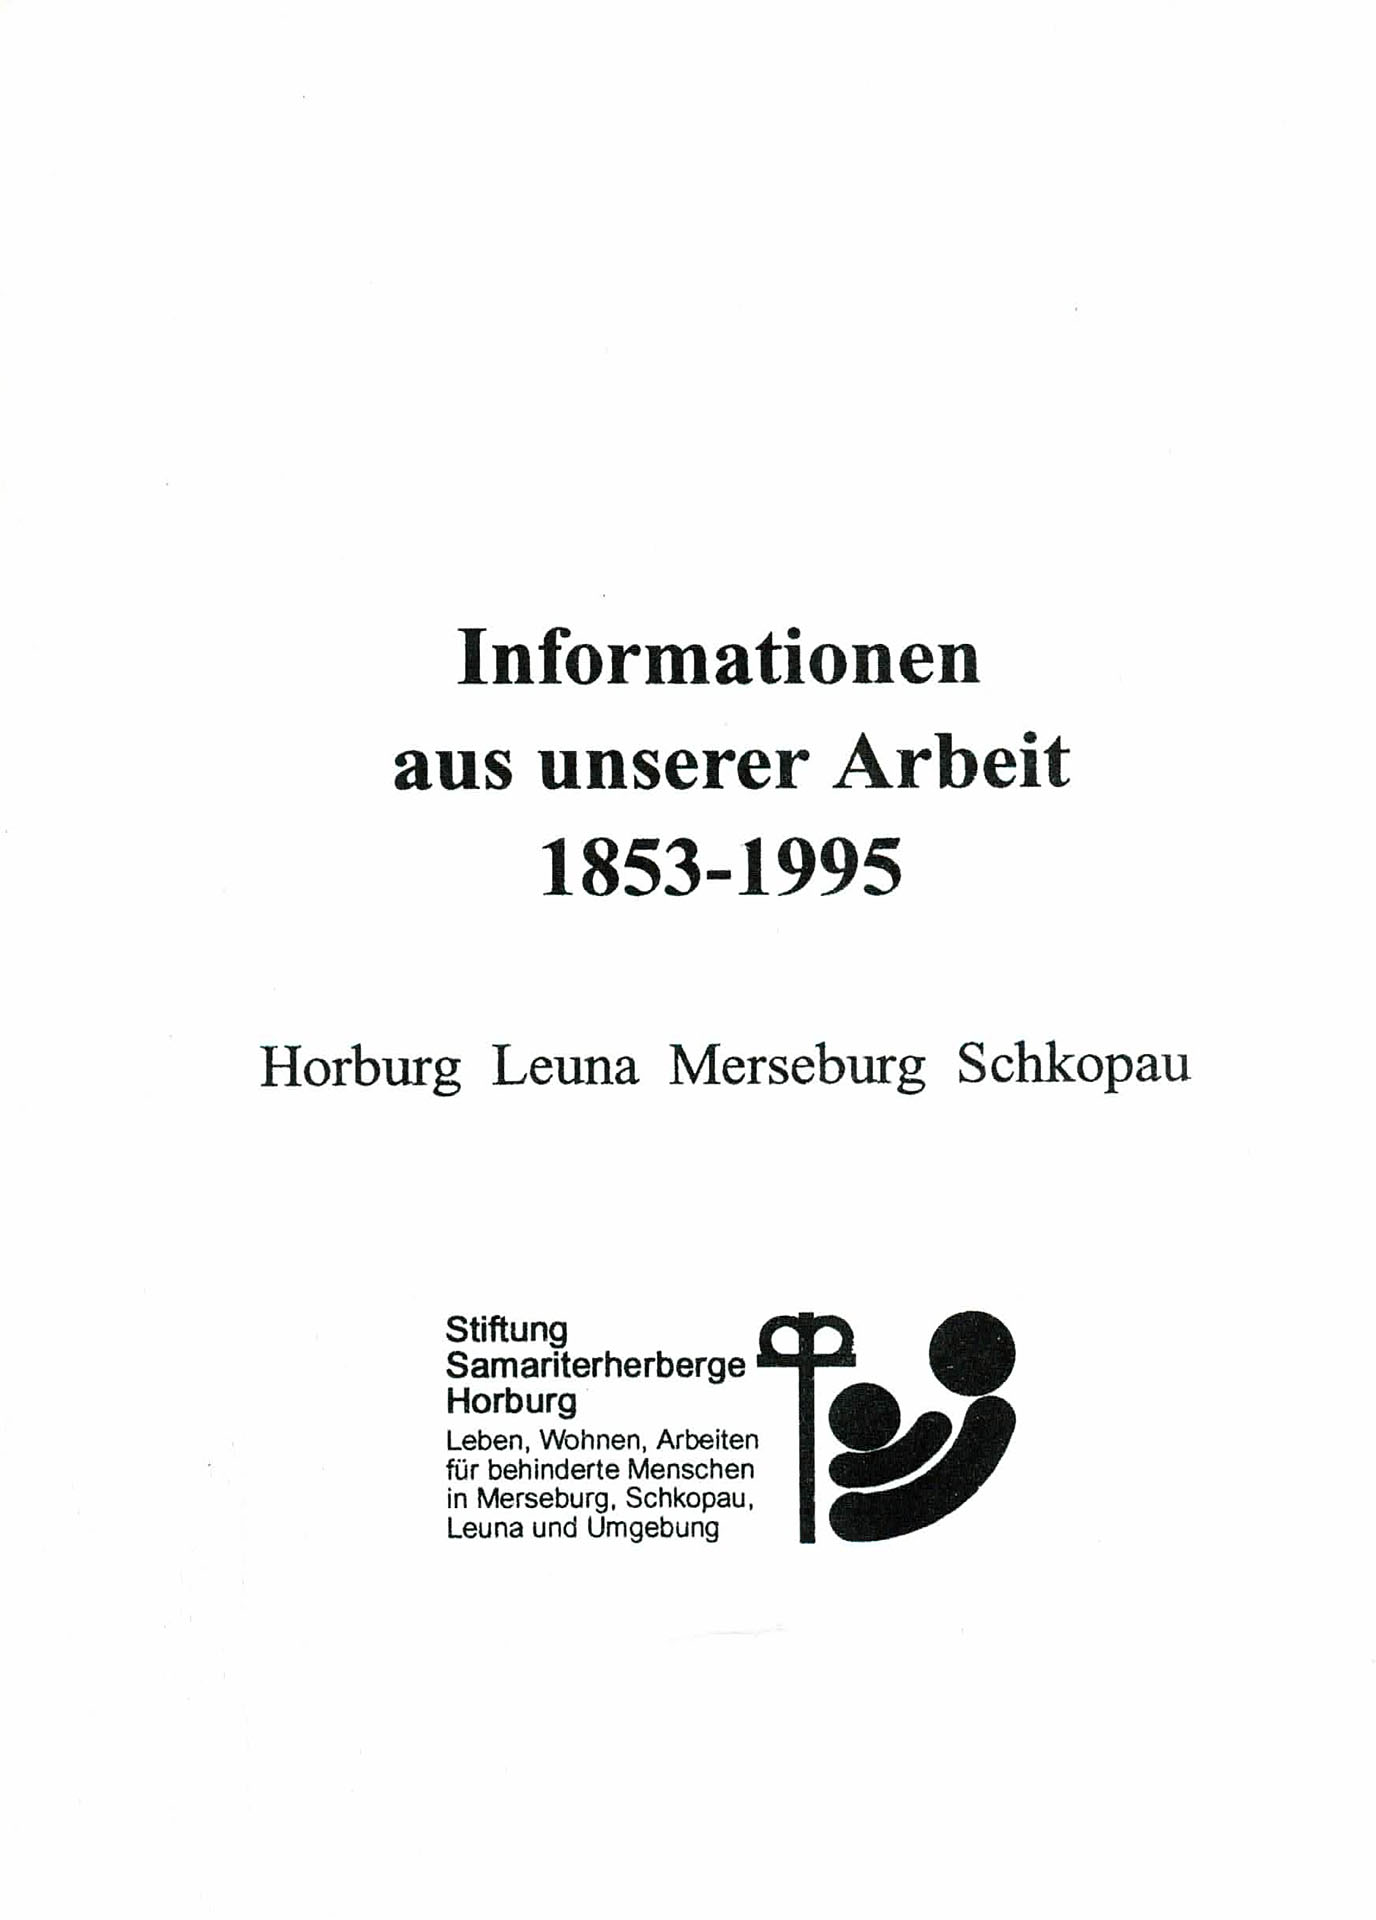 Informationen aus unserer Arbeit (1853 - 1995) - Horburg Leuna Merseburg Schkopau - Stiftung Samaritherherberge Horburg